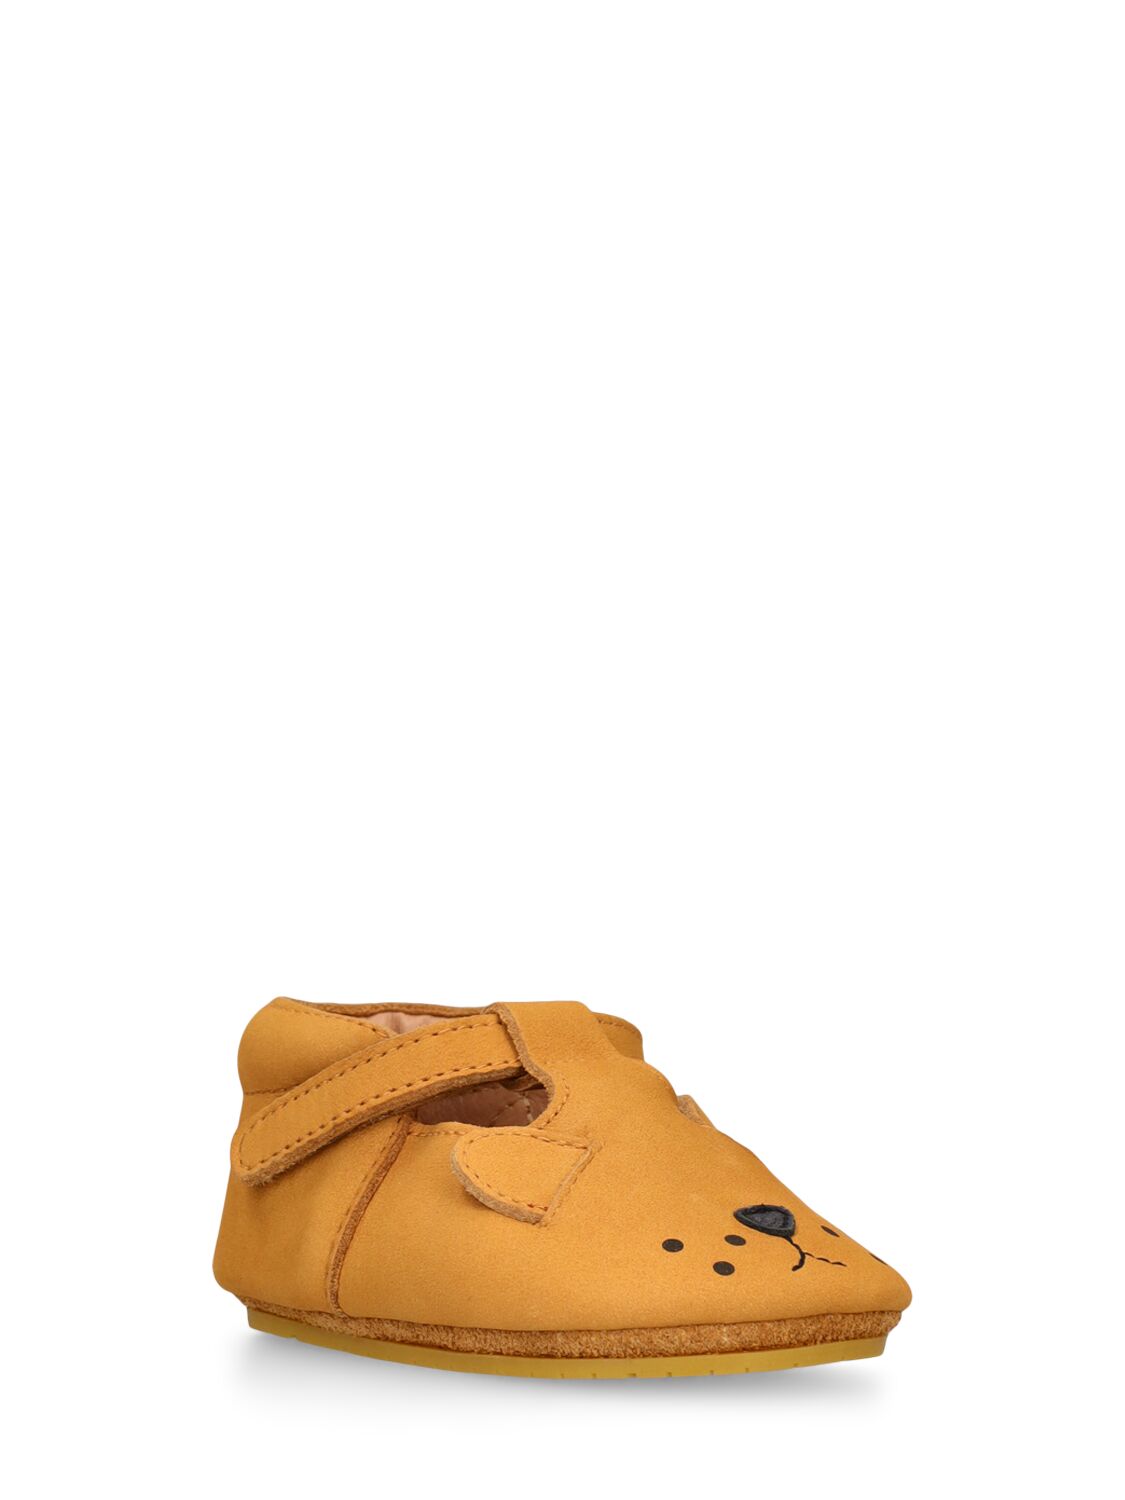 Shop Donsje Lion Leather Pre-walker Shoes In Brown